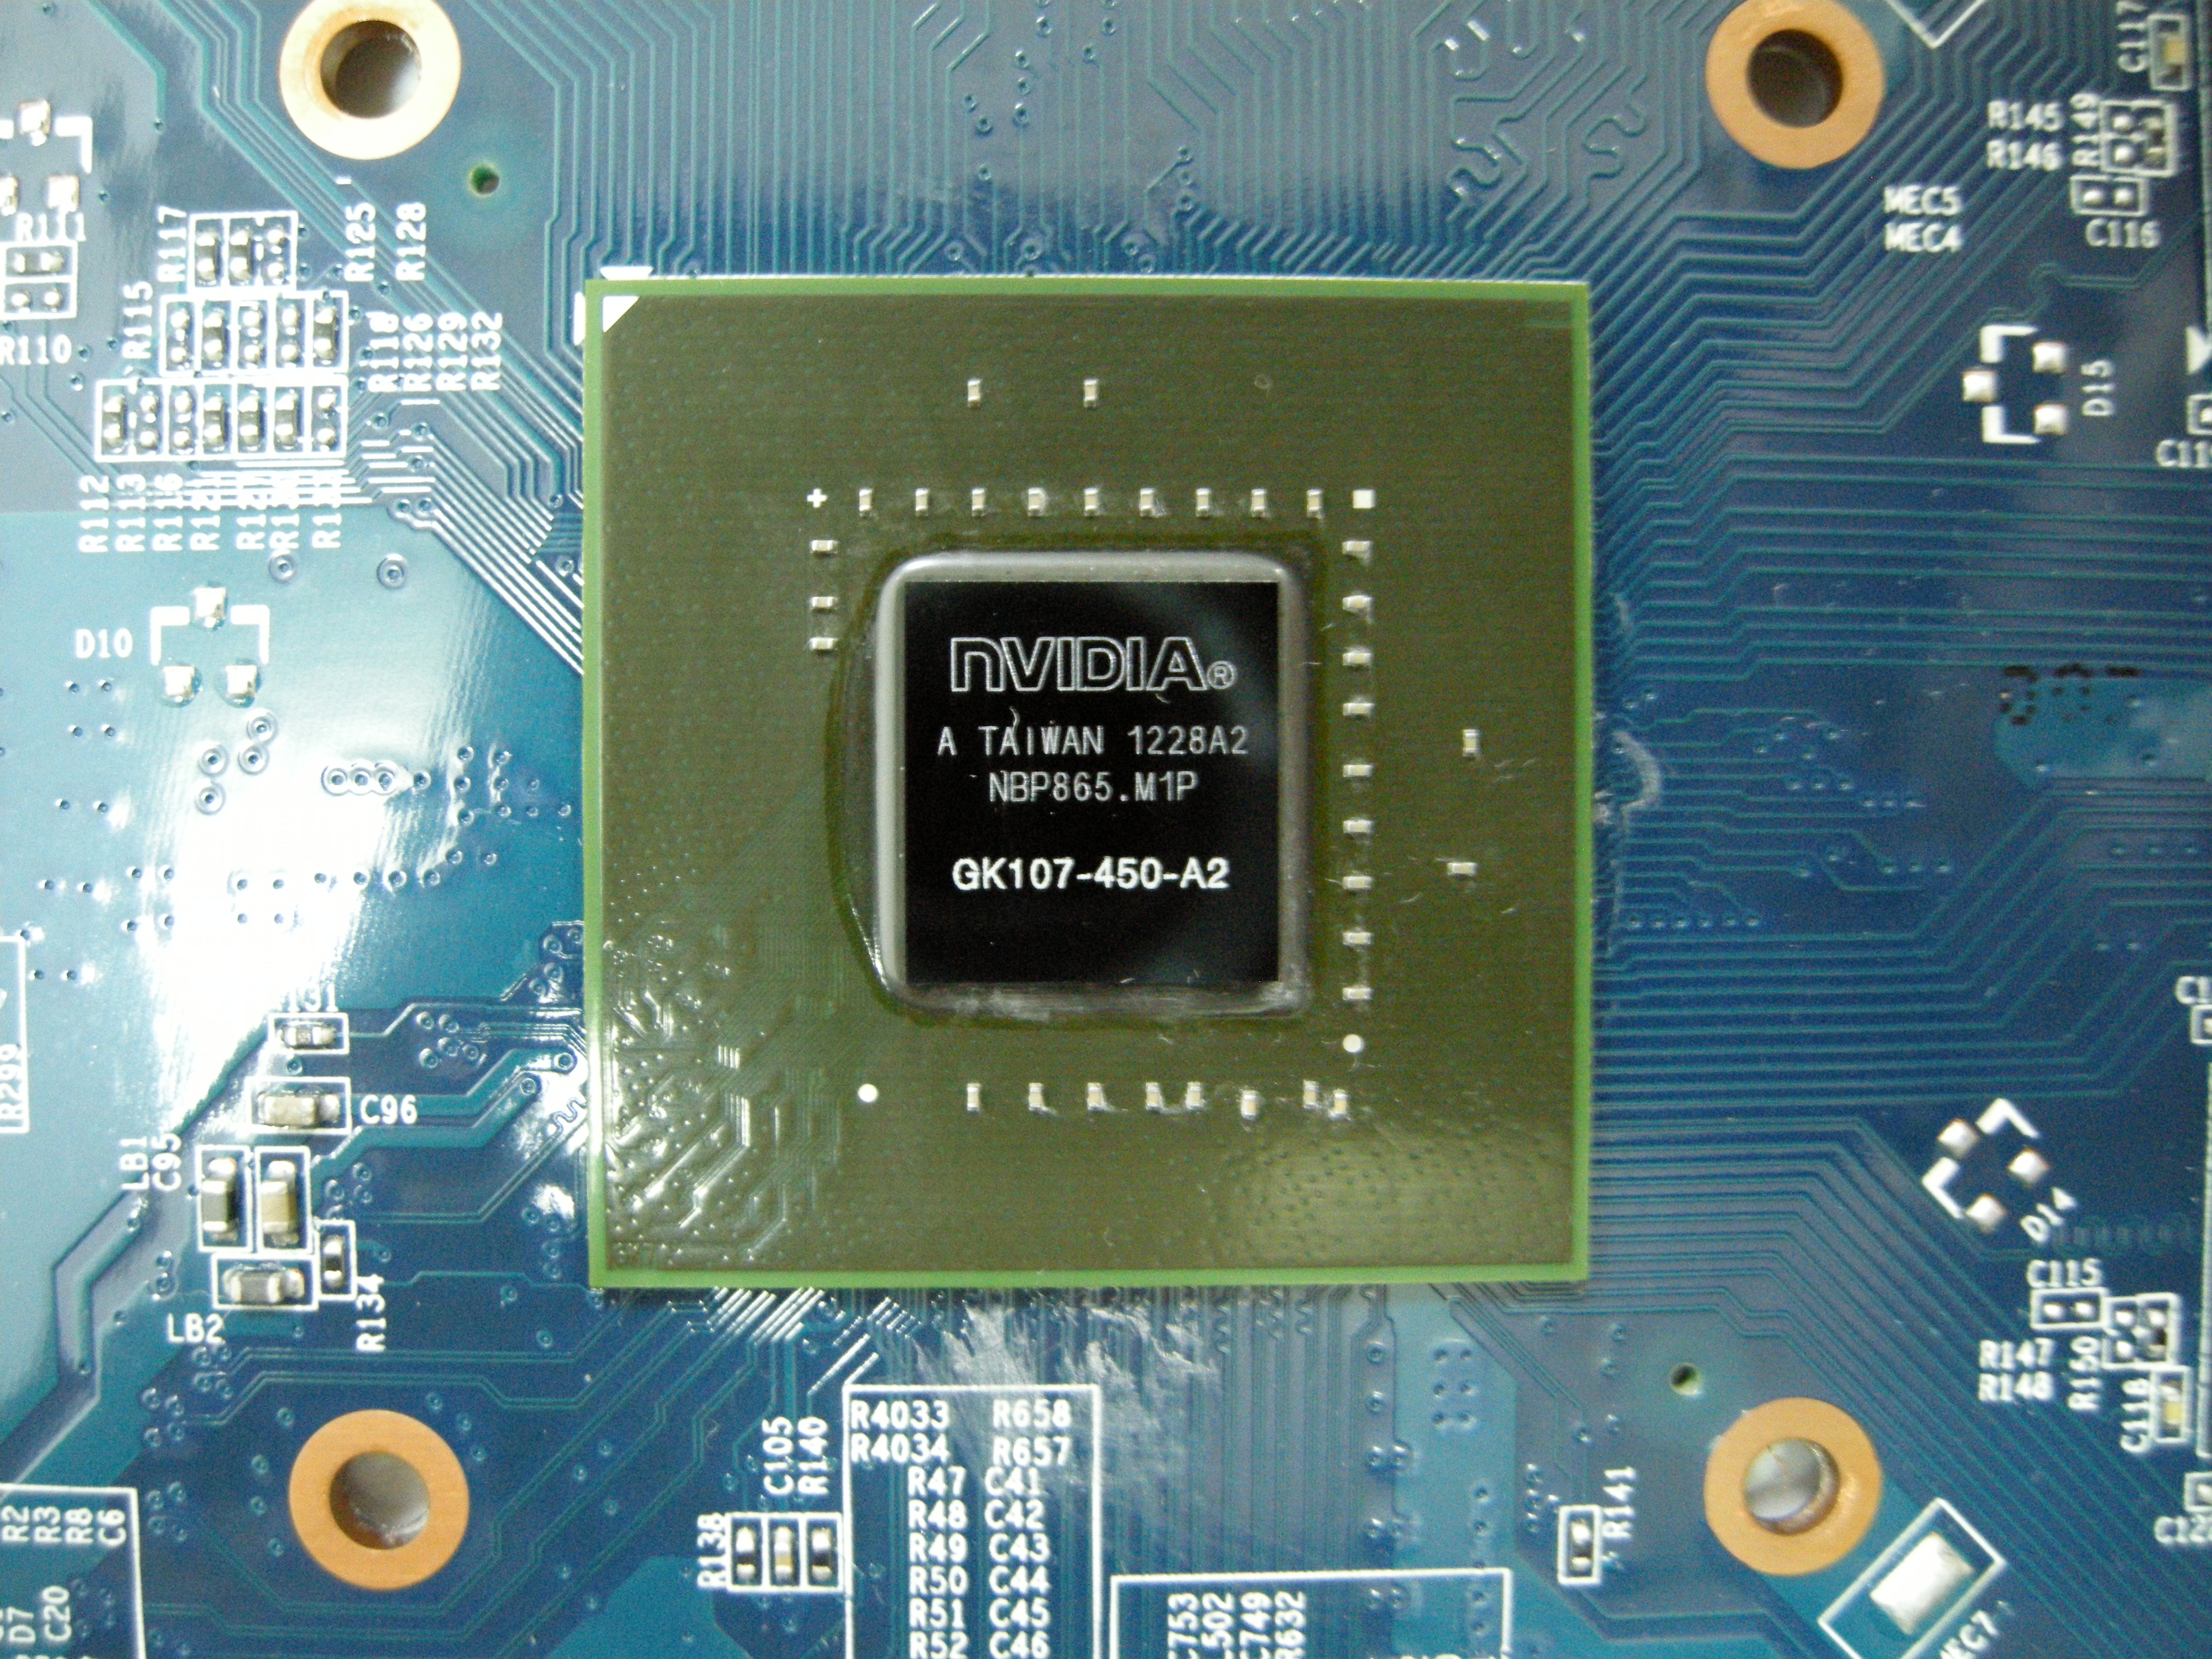 DSCN5235.JPG - 4.48 MB